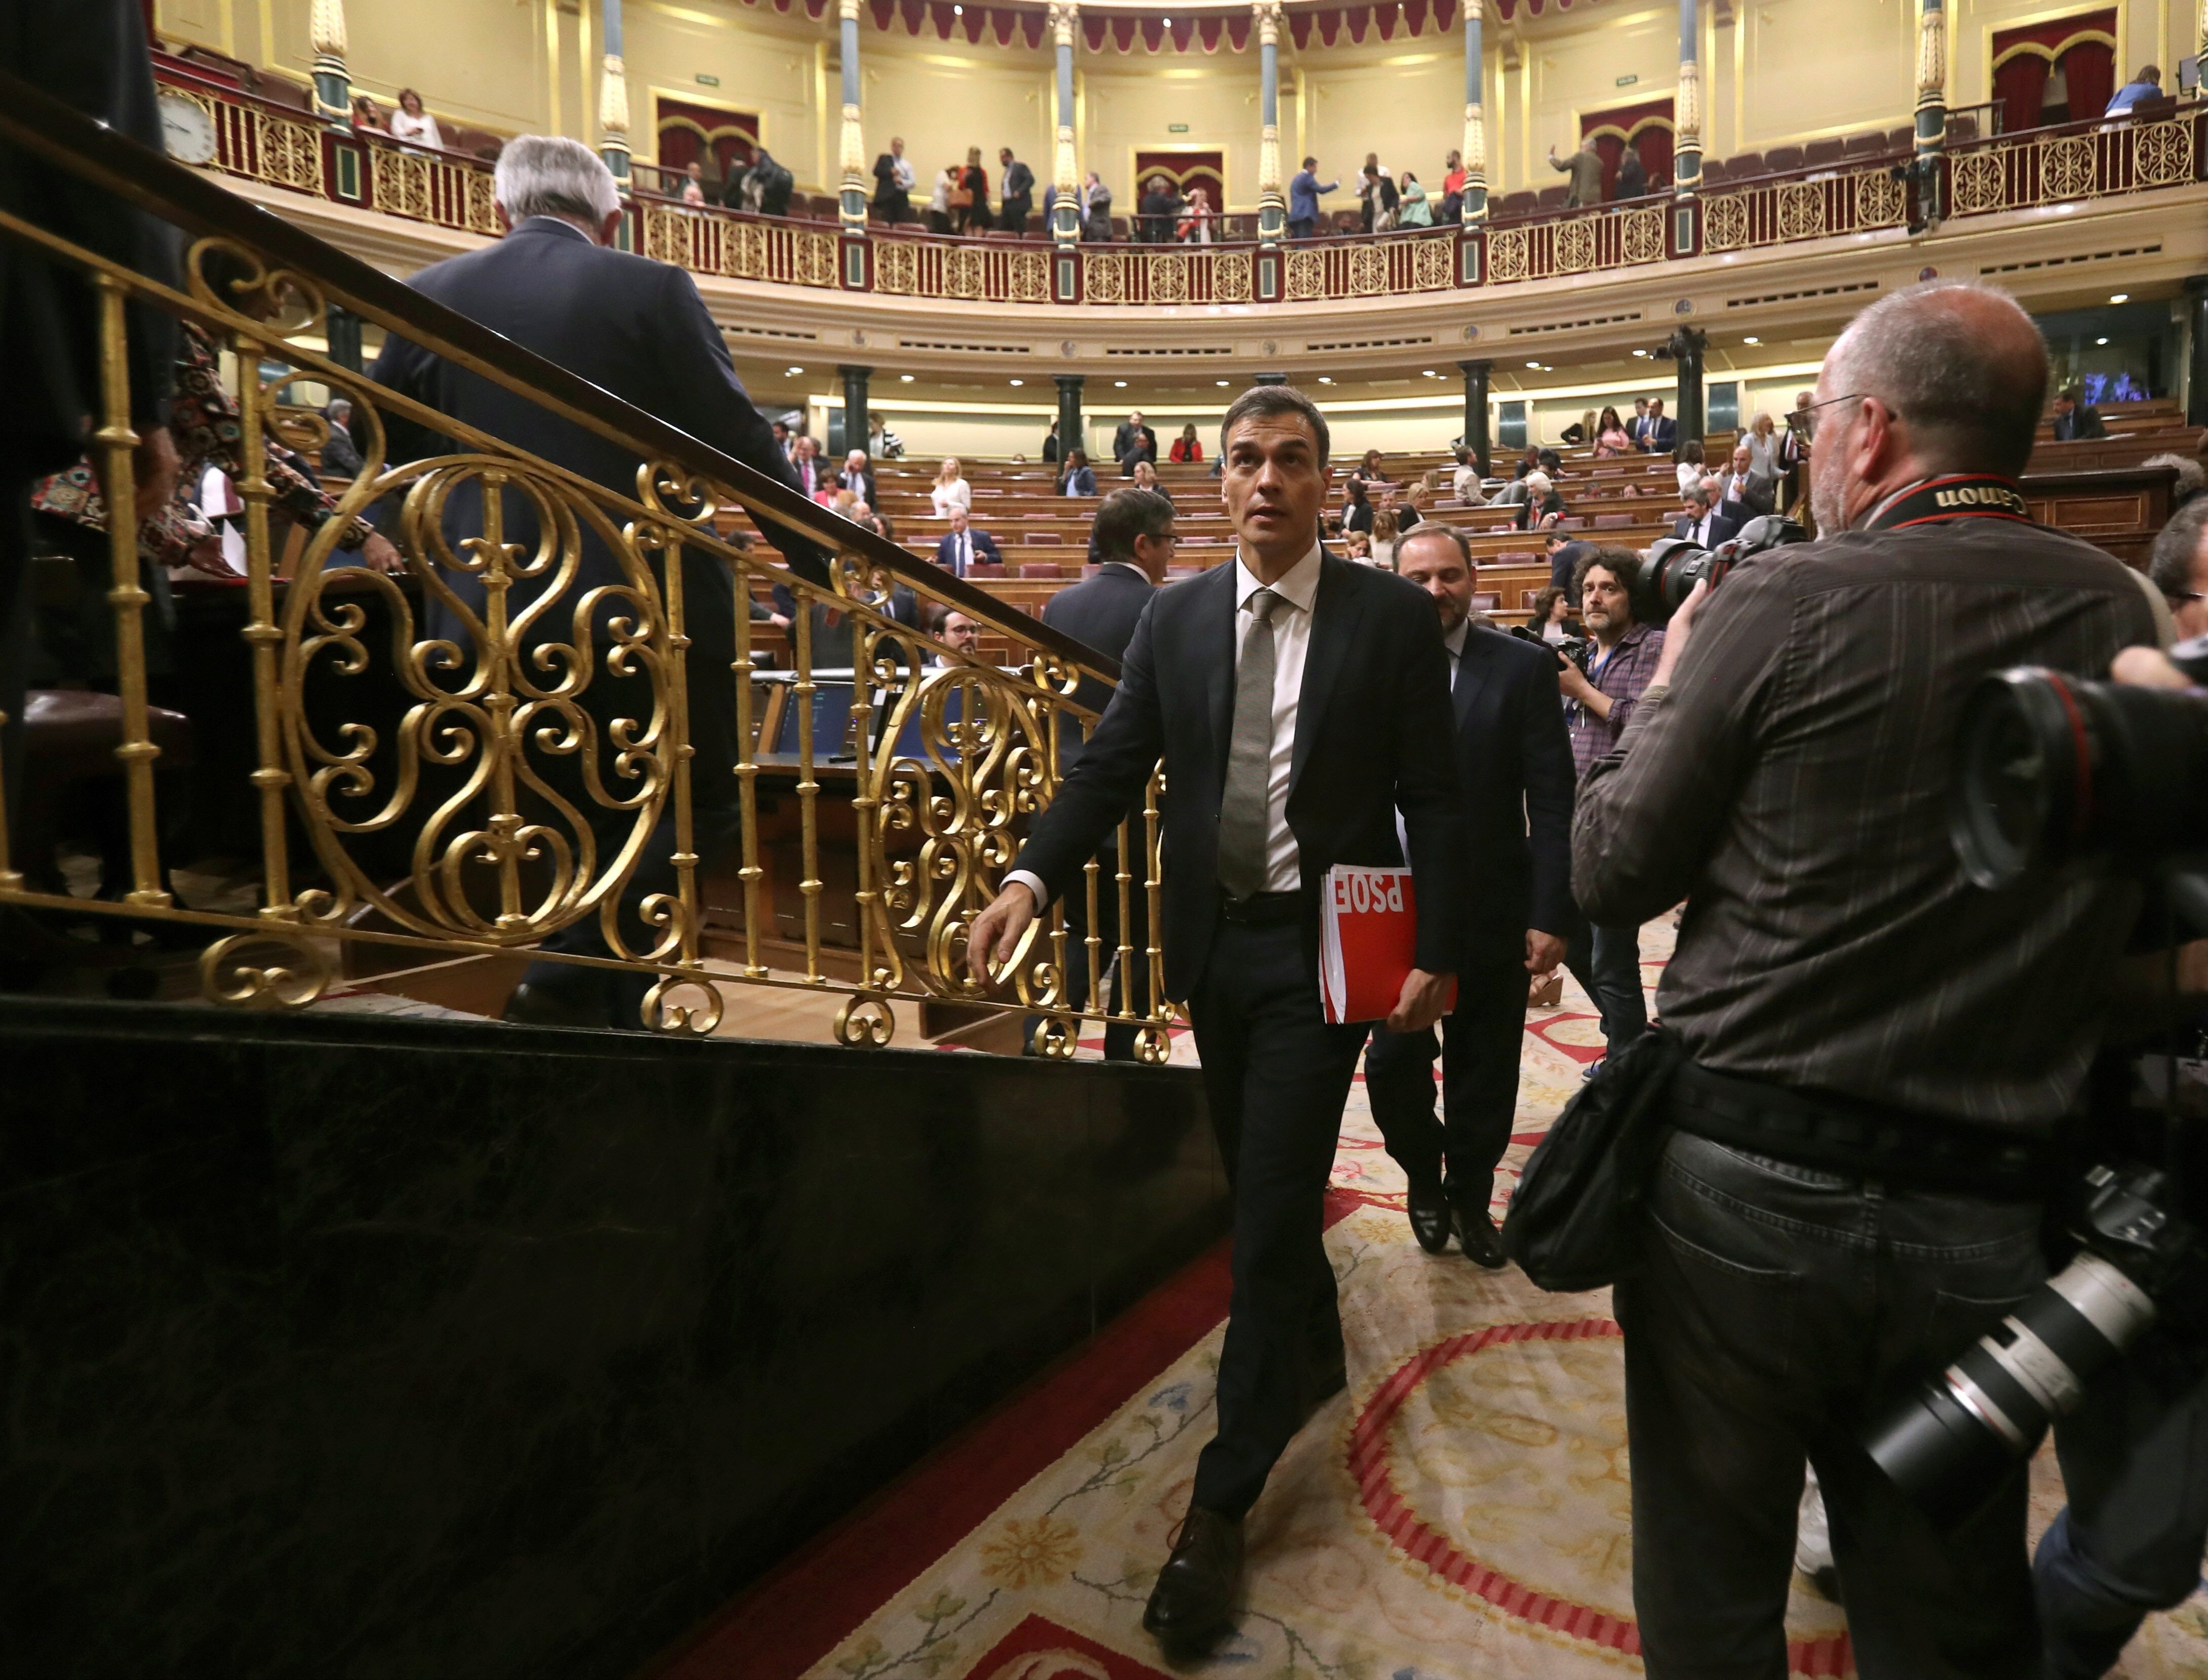 Vídeo: El Congreso grita "Sí se puede" tras la salida de Rajoy